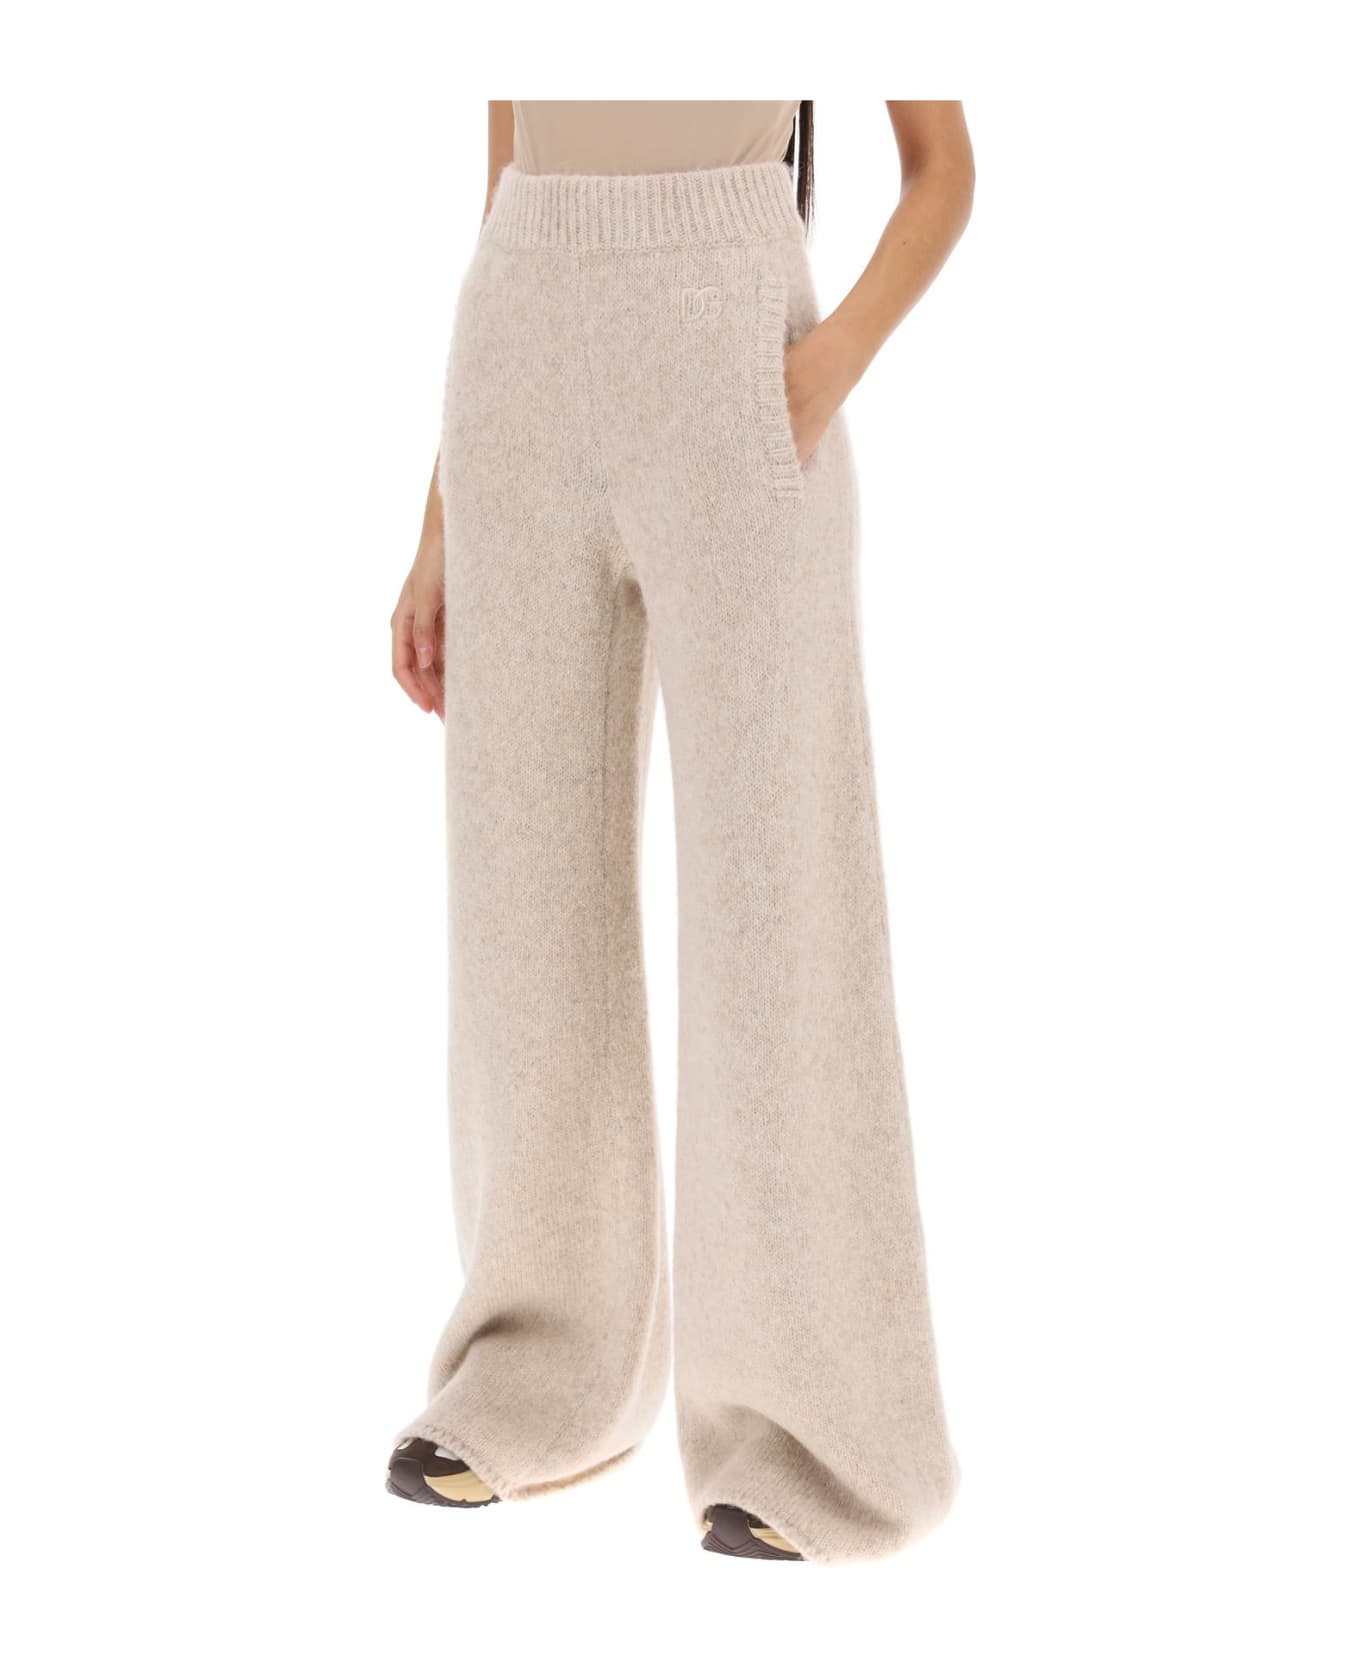 Dolce & Gabbana Llama Knit Flared Pants - CORDA SCURO (Beige)